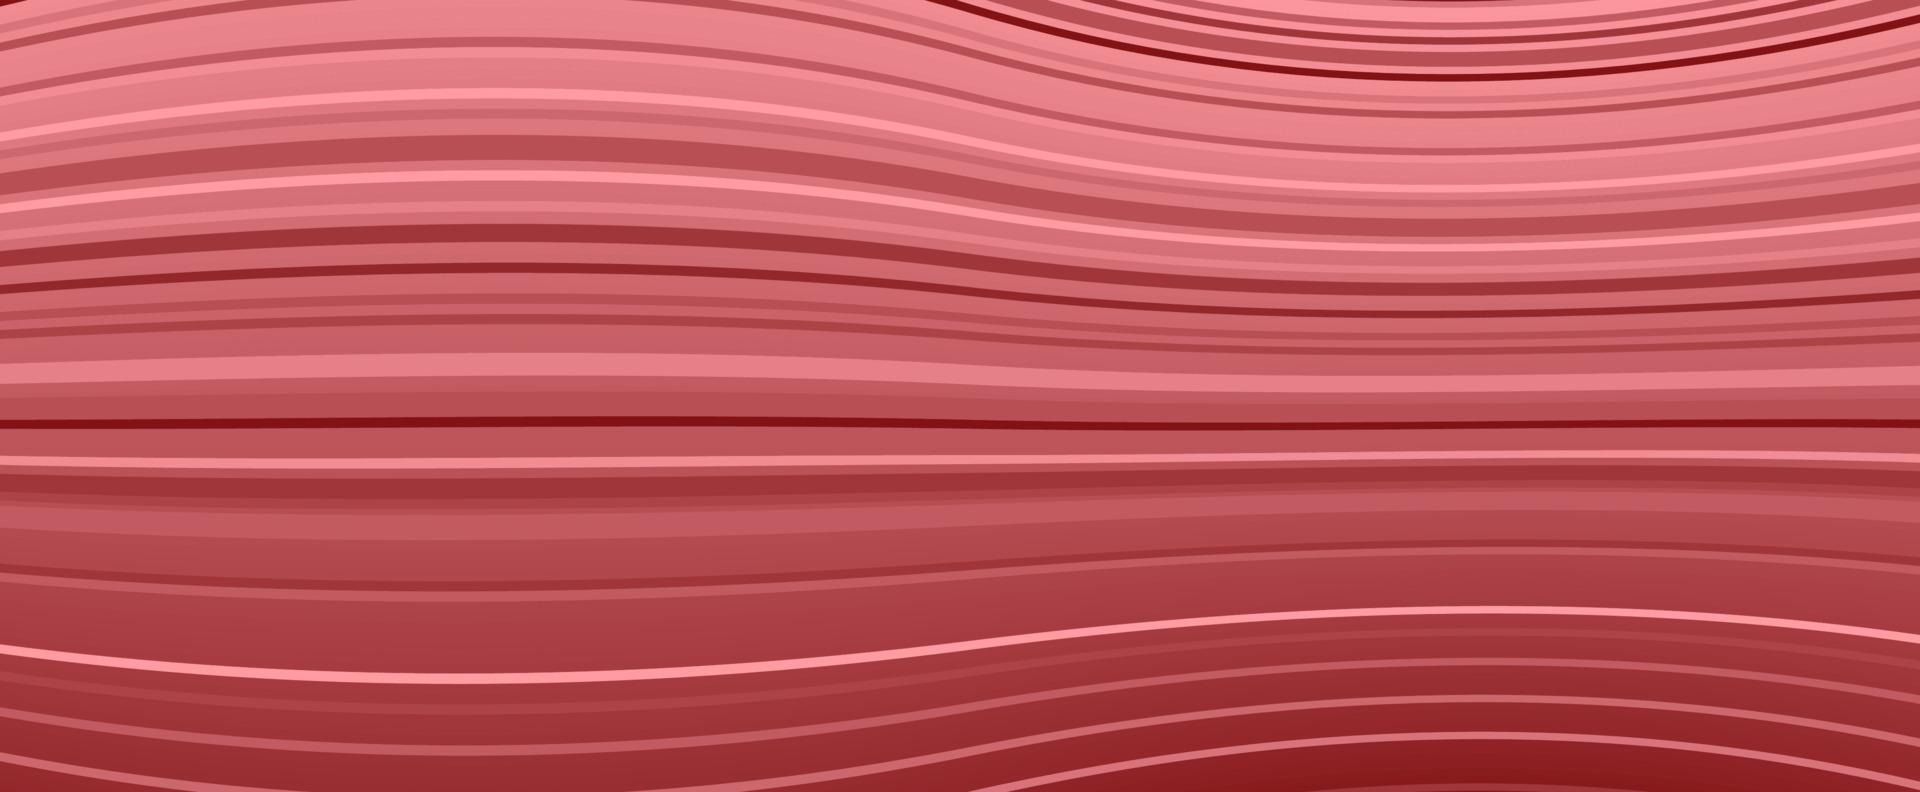 fondo vectorial de rayas rojas en forma de espacio distorsionado vector